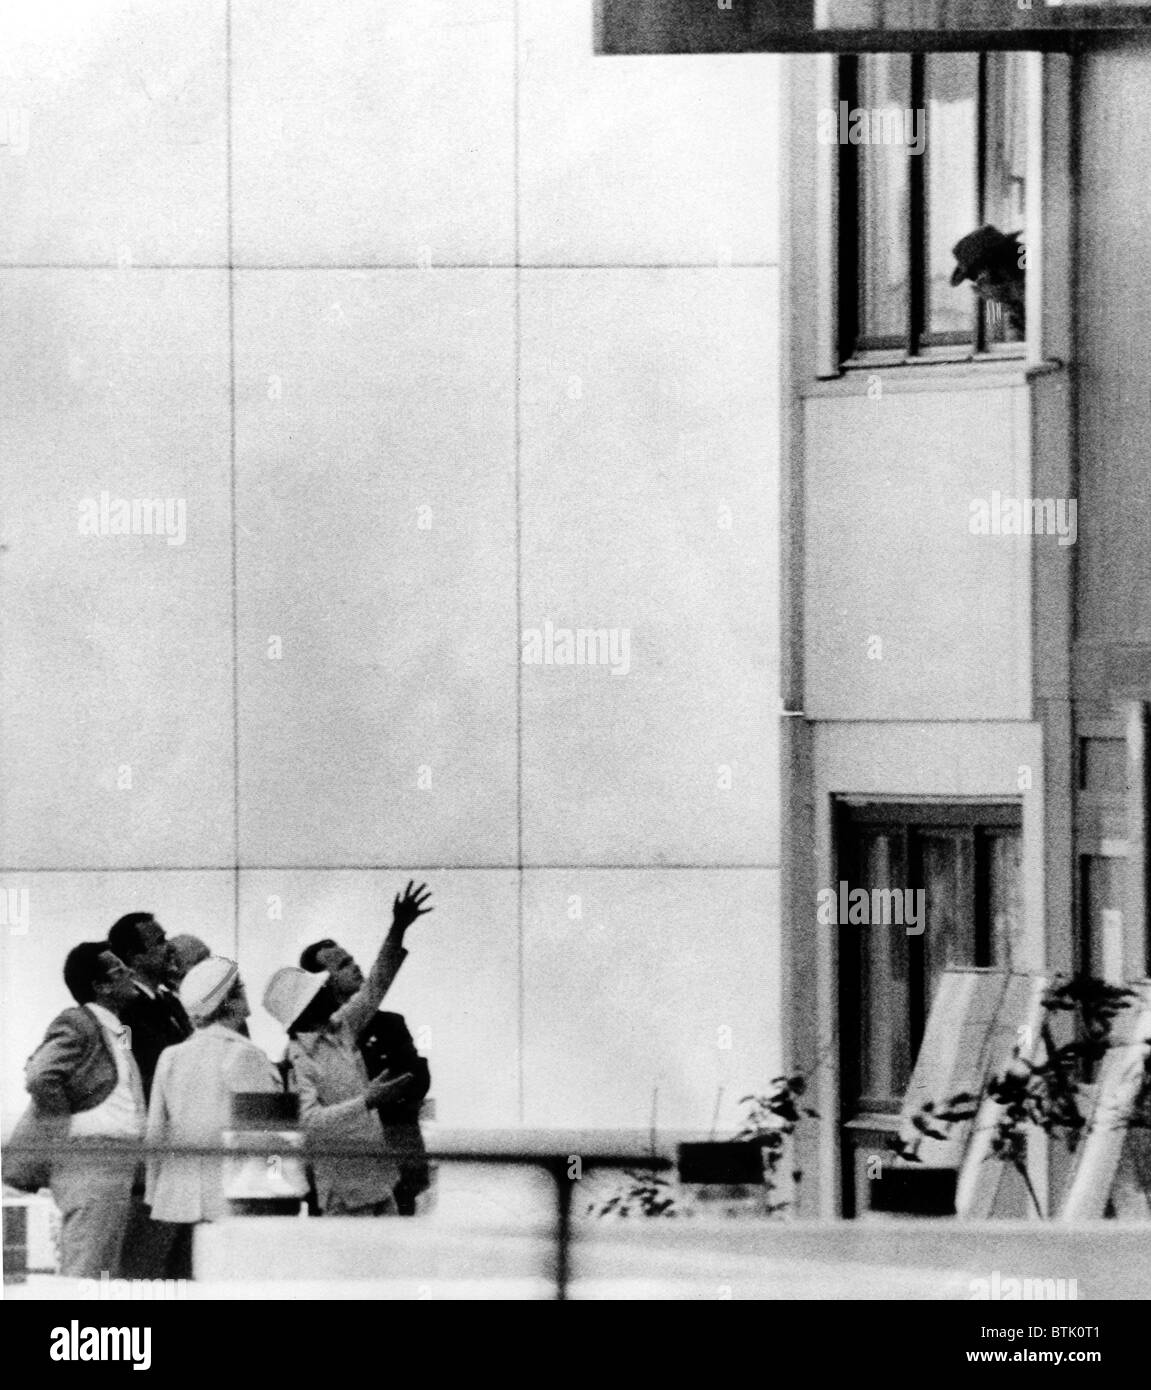 Olympiade 1972, Mitglieder von "Schwarzer September" (Hüte tragen) verleihen außerhalb israelische Viertel, München, Deutschland, 05.09.1972. Stockfoto